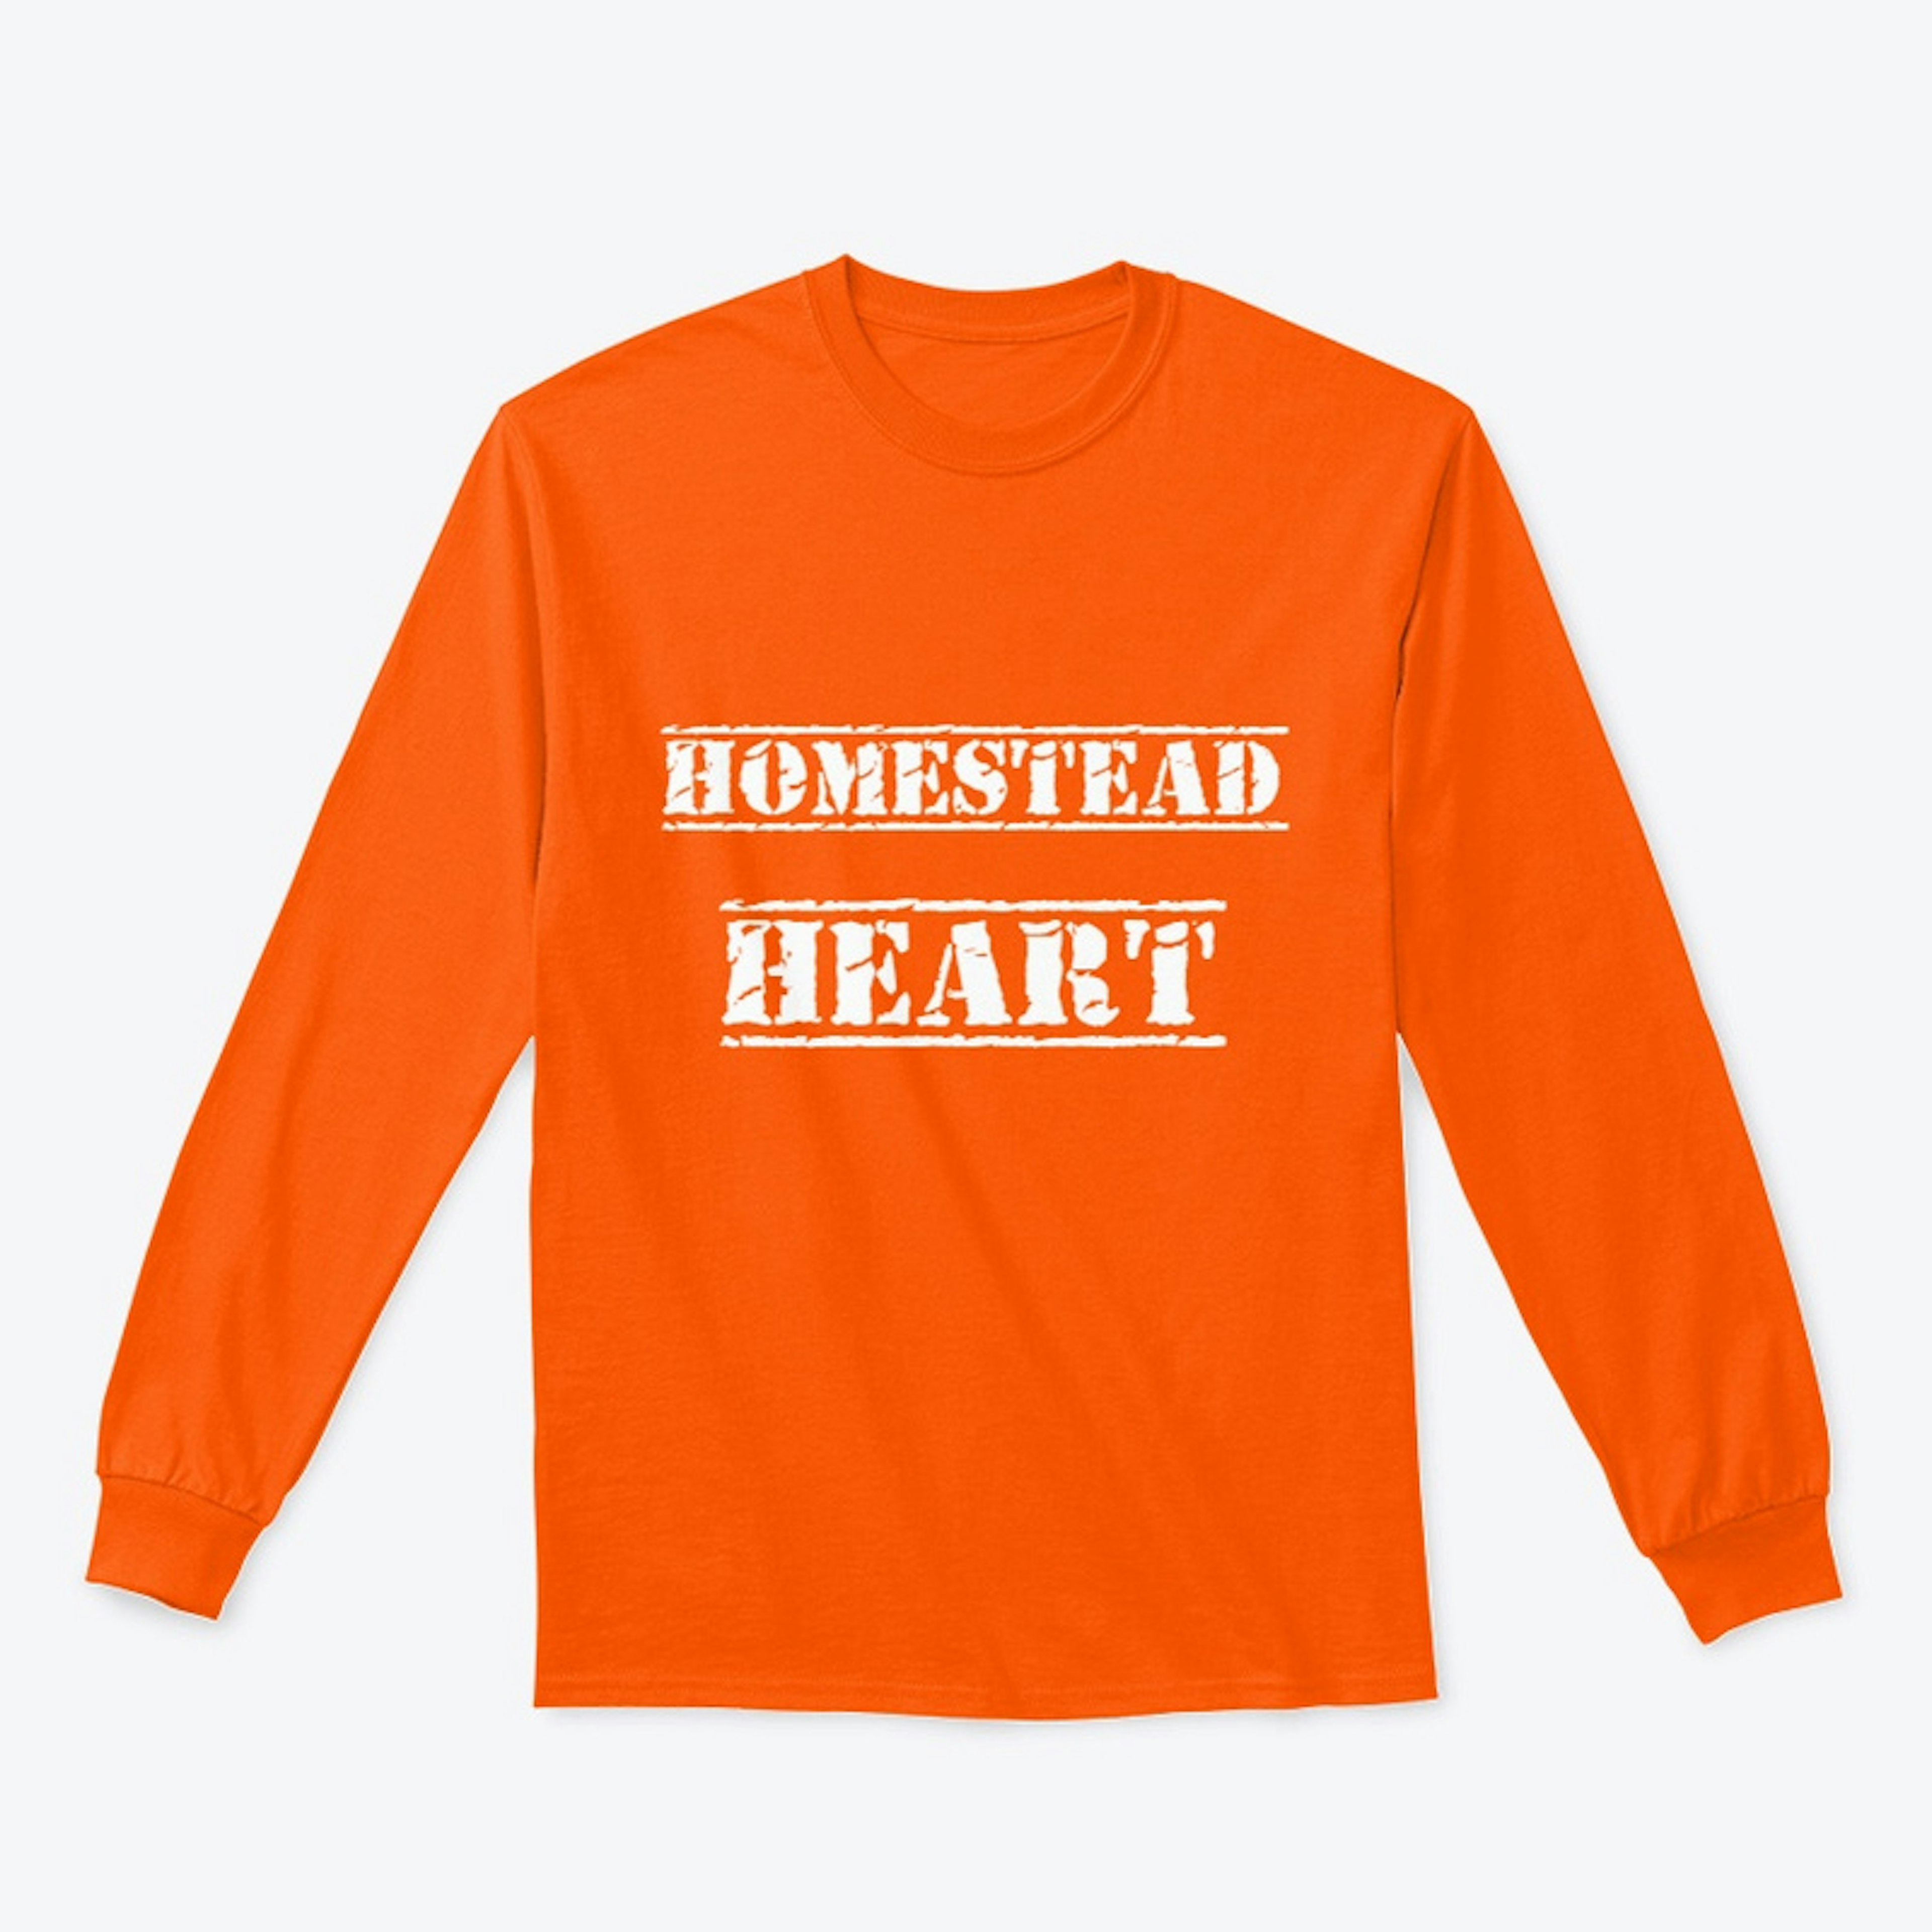 Homestead Heart